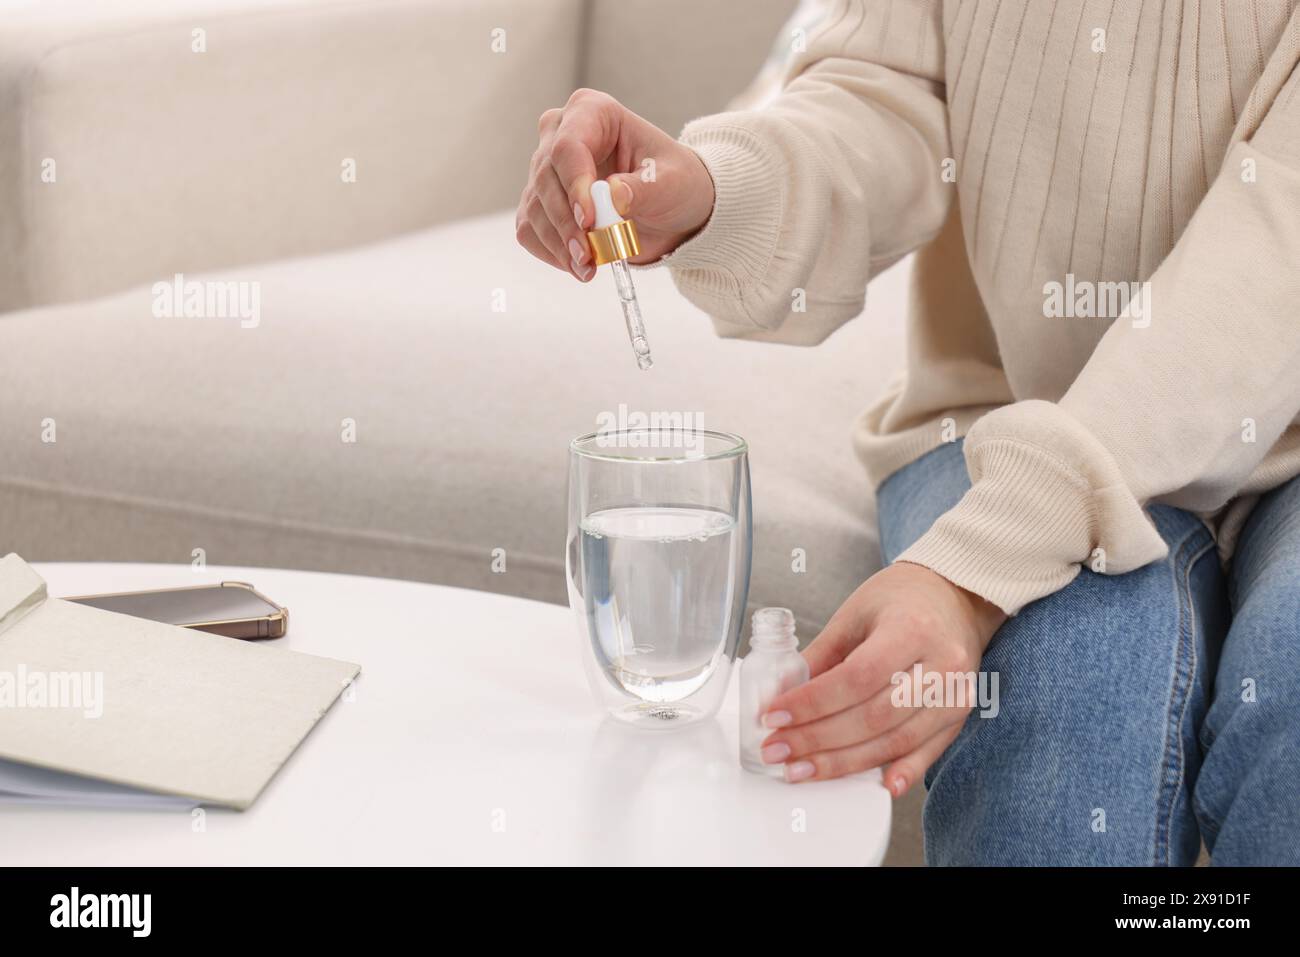 Frau tropft Nahrungsergänzungsmittel in ein Glas Wasser auf einem weißen Tisch drinnen, Nahaufnahme Stockfoto